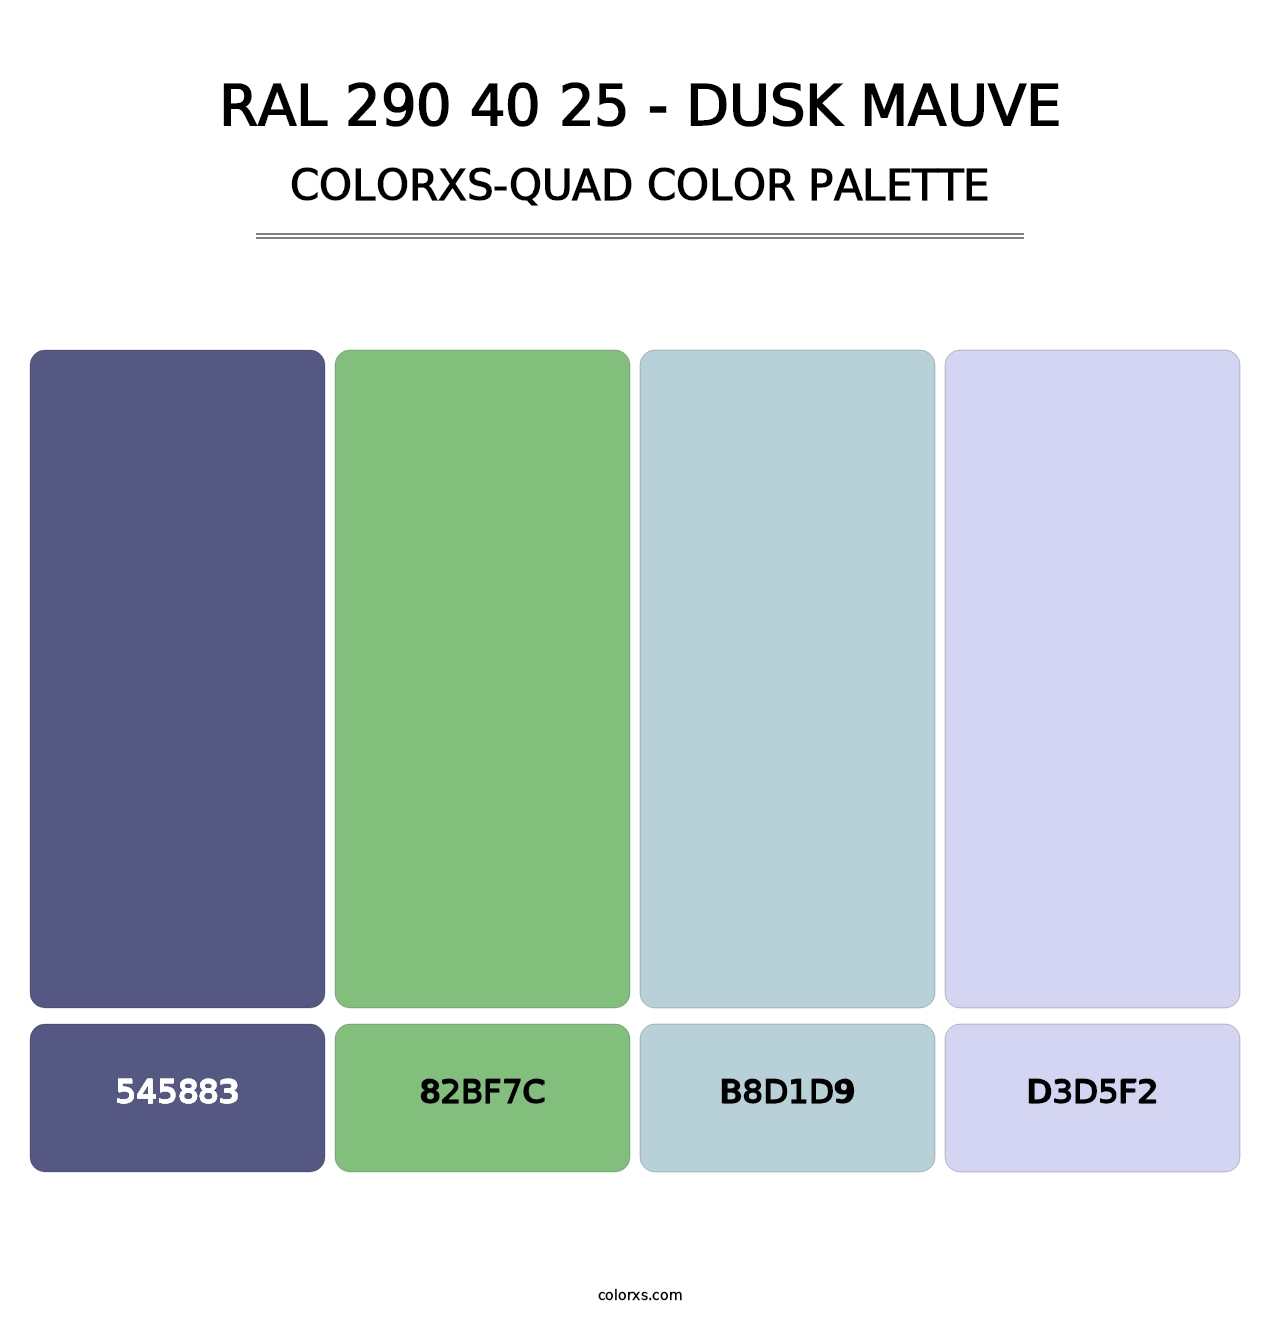 RAL 290 40 25 - Dusk Mauve - Colorxs Quad Palette